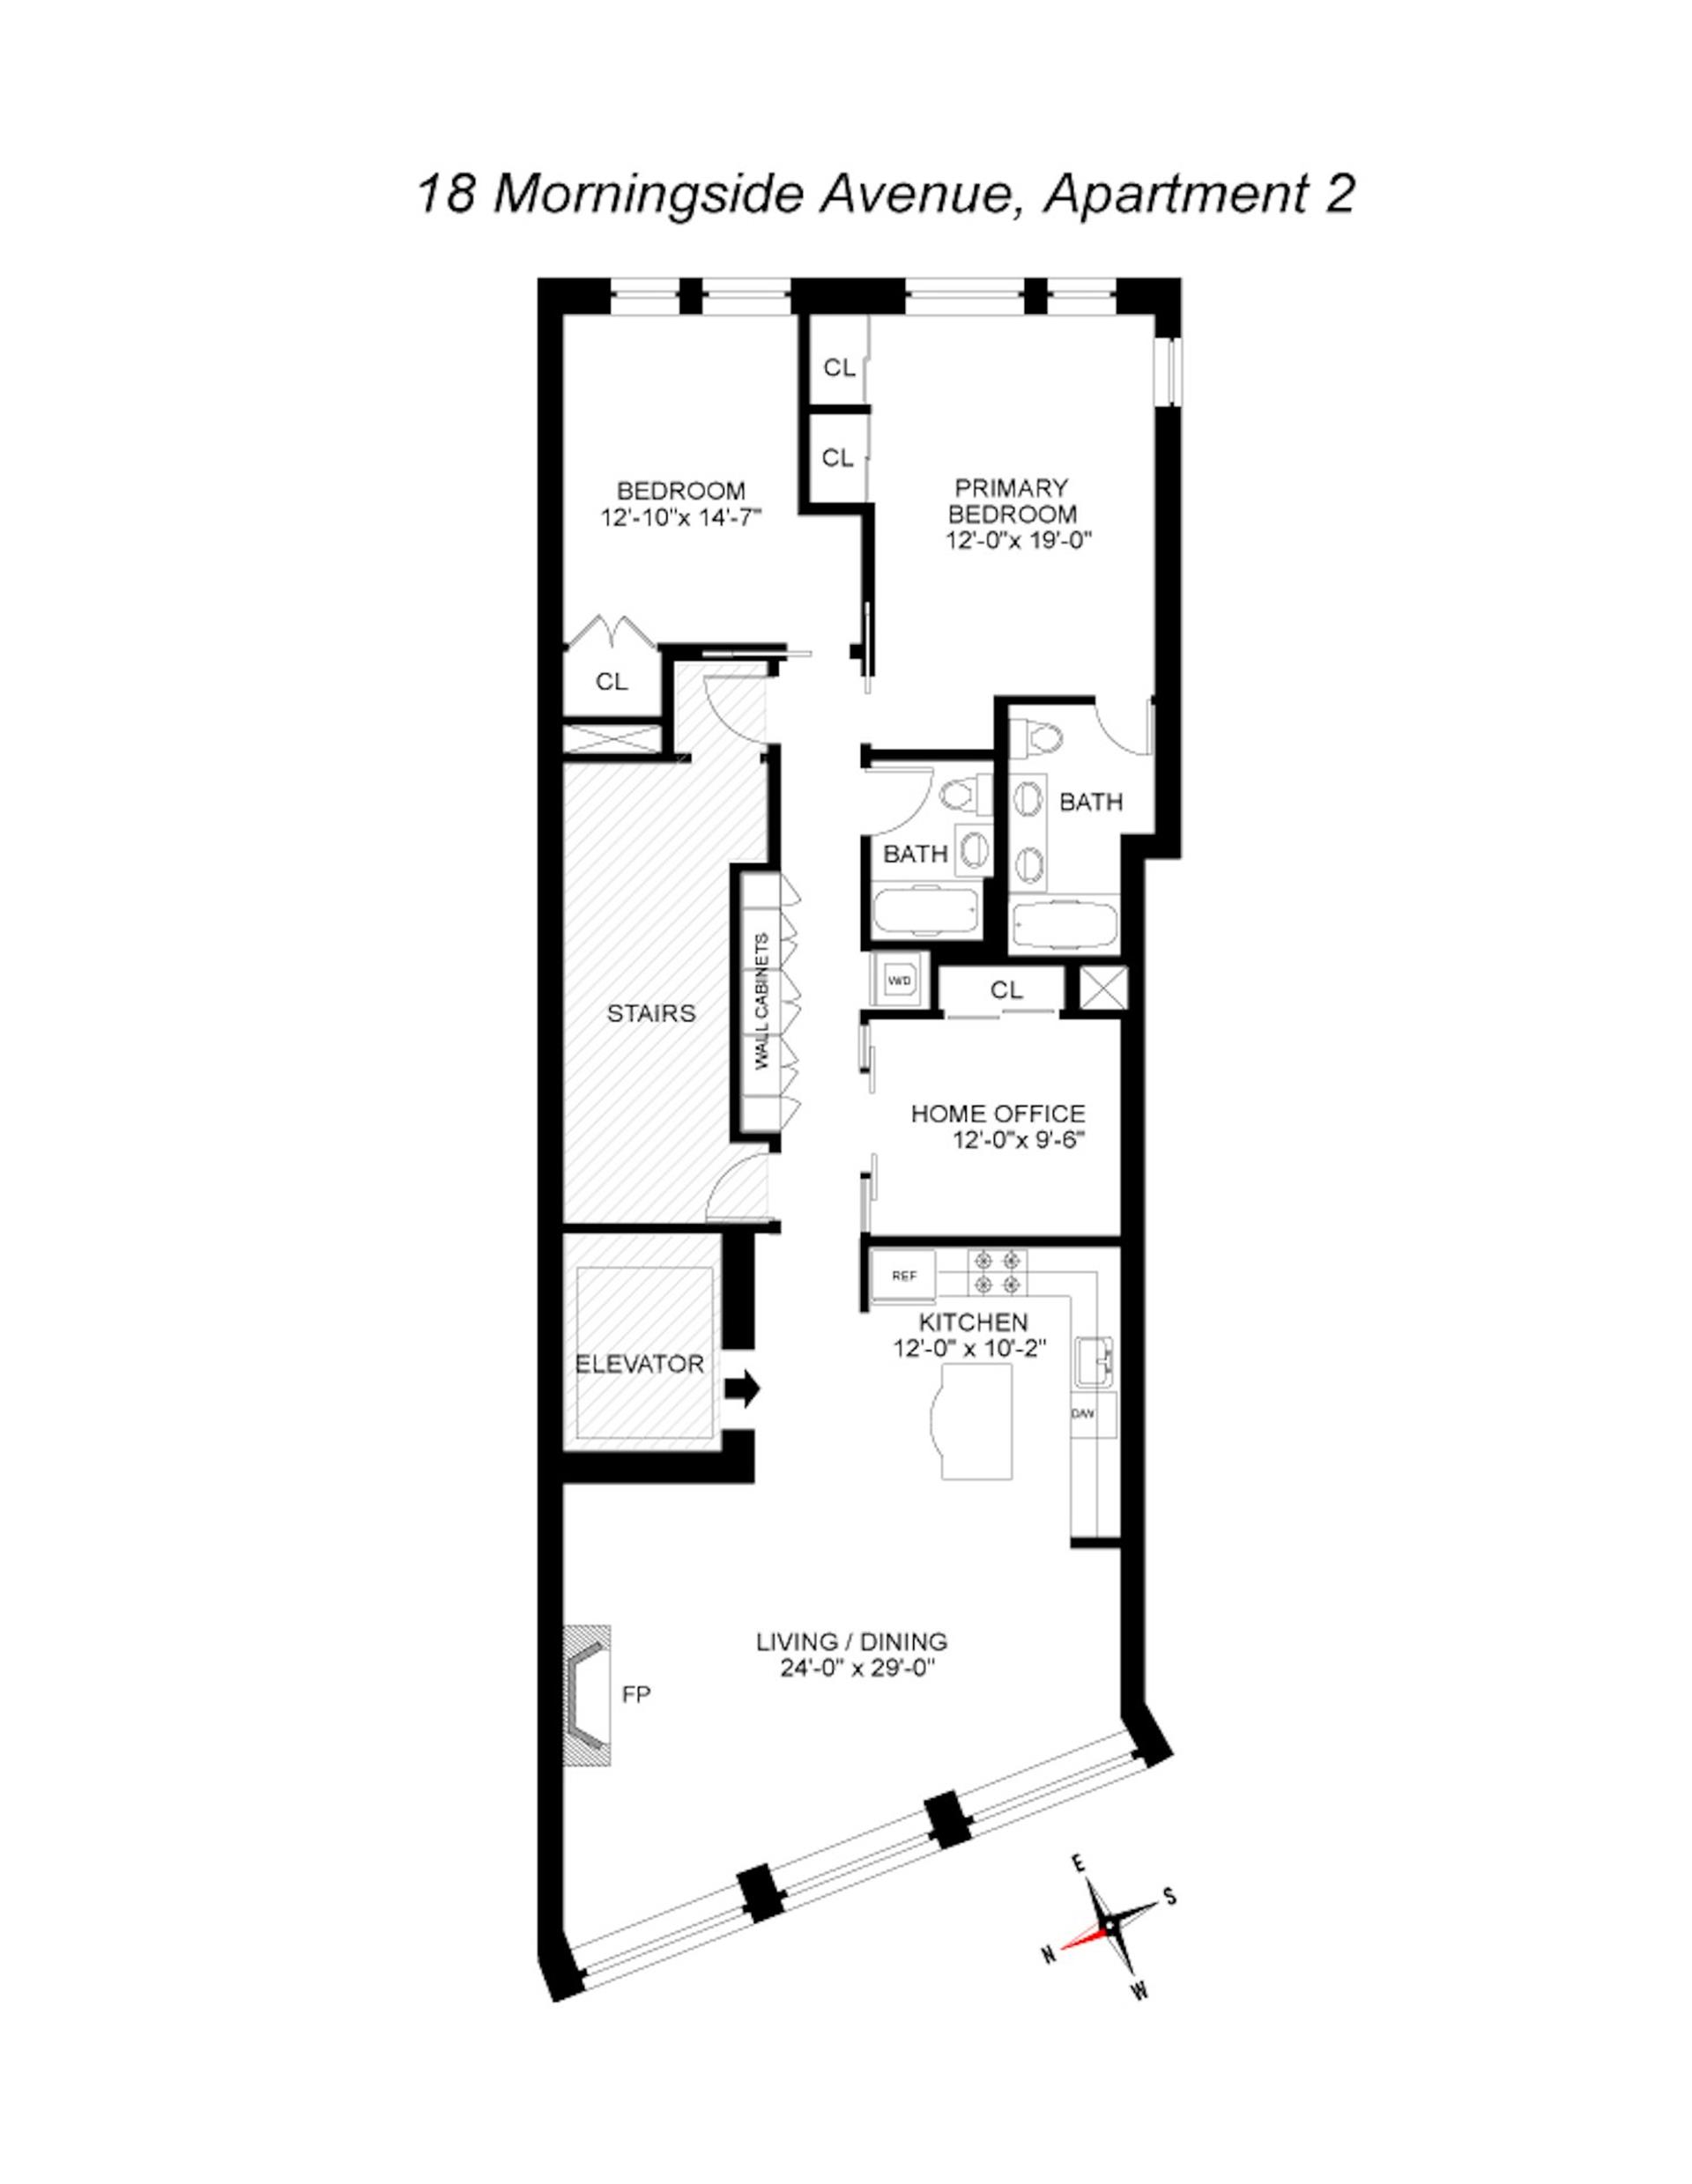 Floorplan for 18 Morningside Avenue, 2